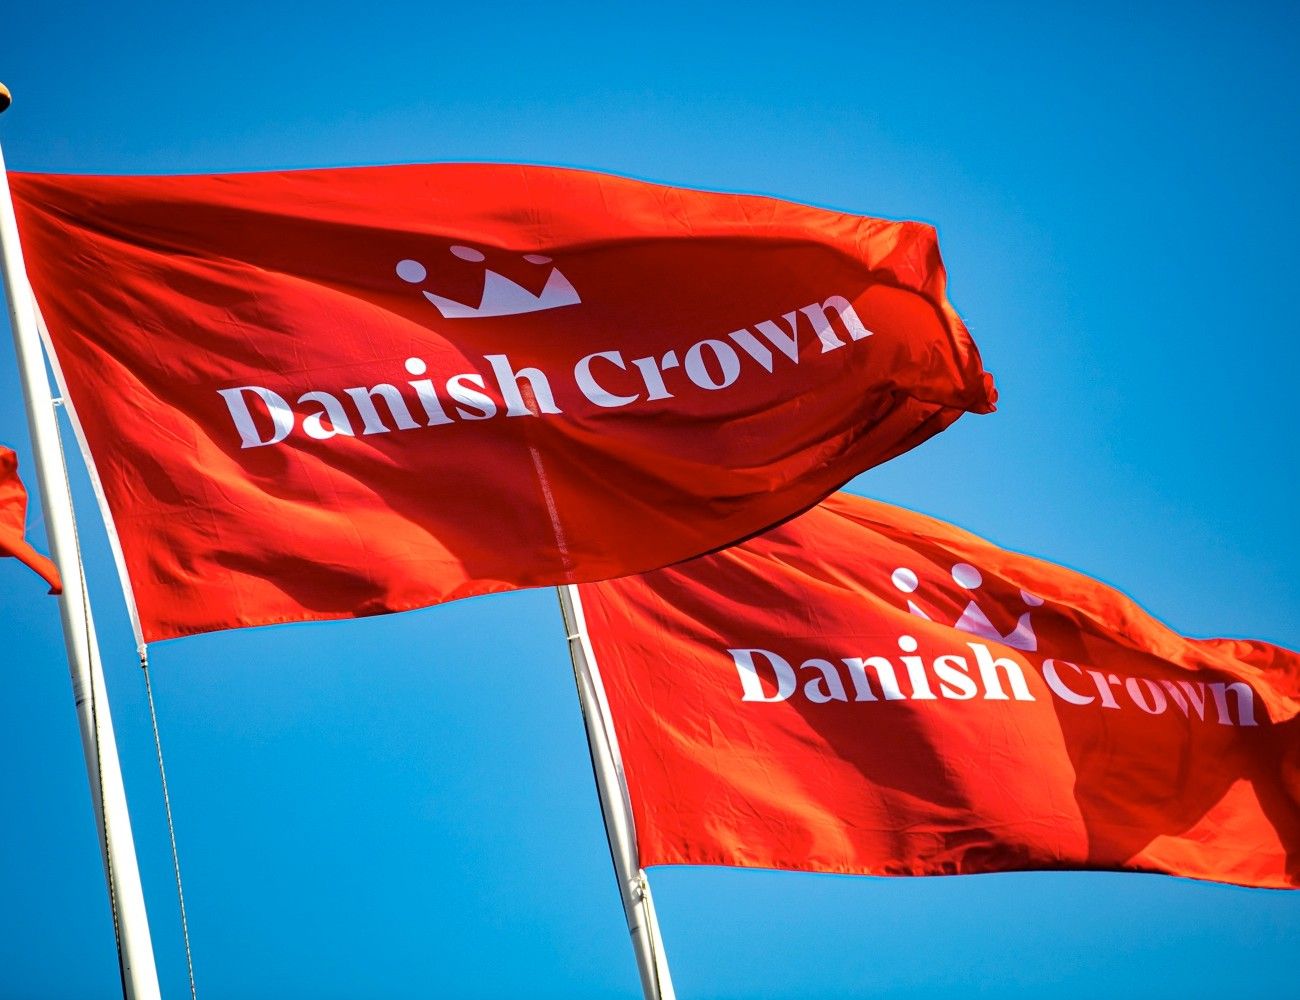 Retssagen om Danish Crowns grønne markedsføring ligger et stykke ude i fremtiden, men afgørelsen får betydning for, hvordan virksomheder kan kommunikere om bæredygtighed. Foto: Danish Crown / PR